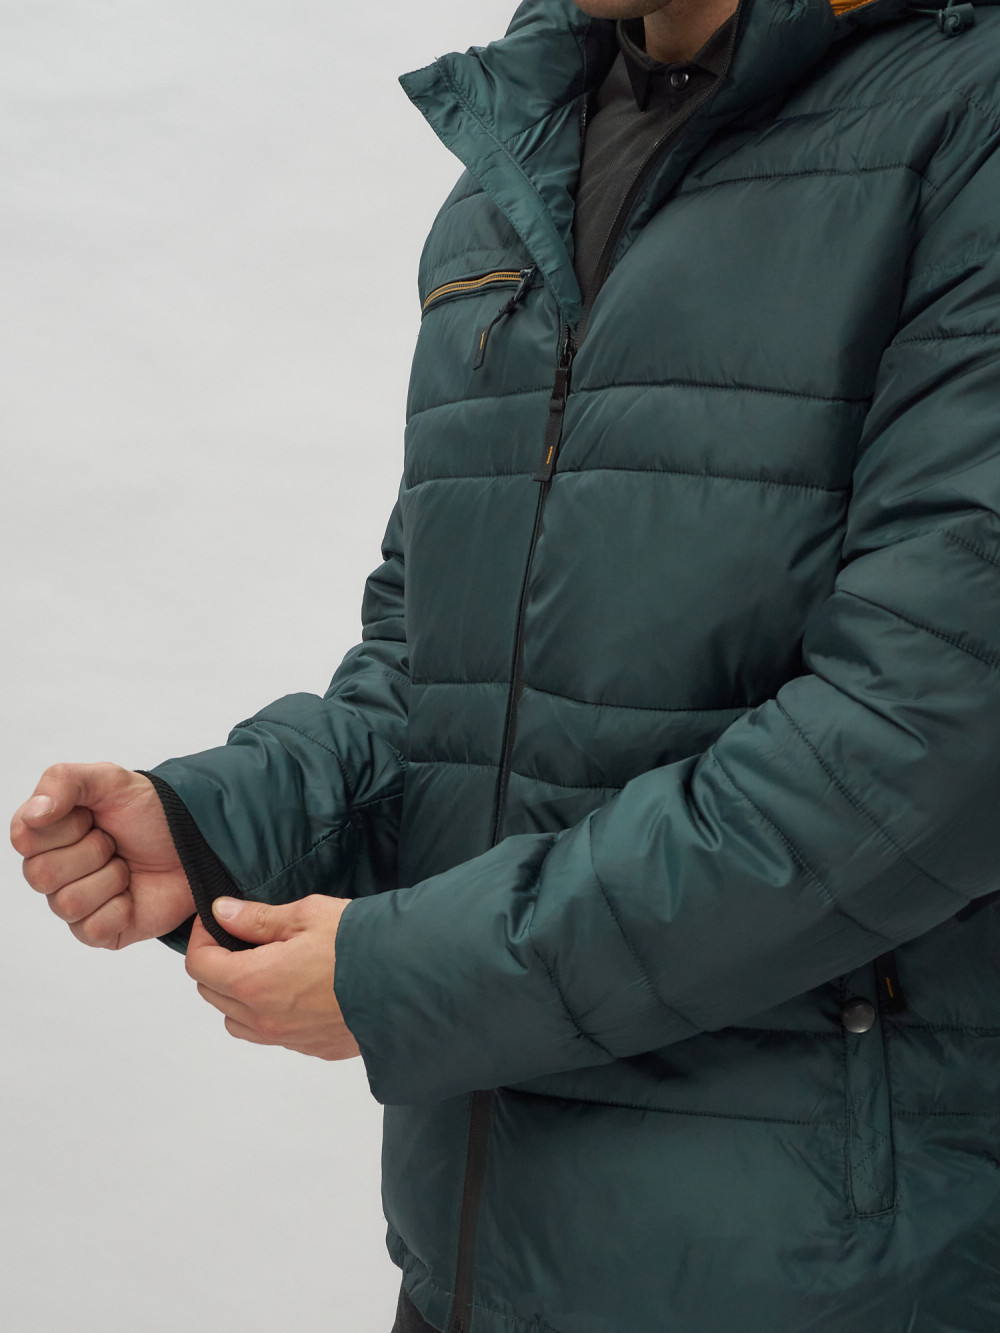 Купить куртку мужскую спортивную весеннюю оптом от производителя недорого в Москве 62175TZ 1